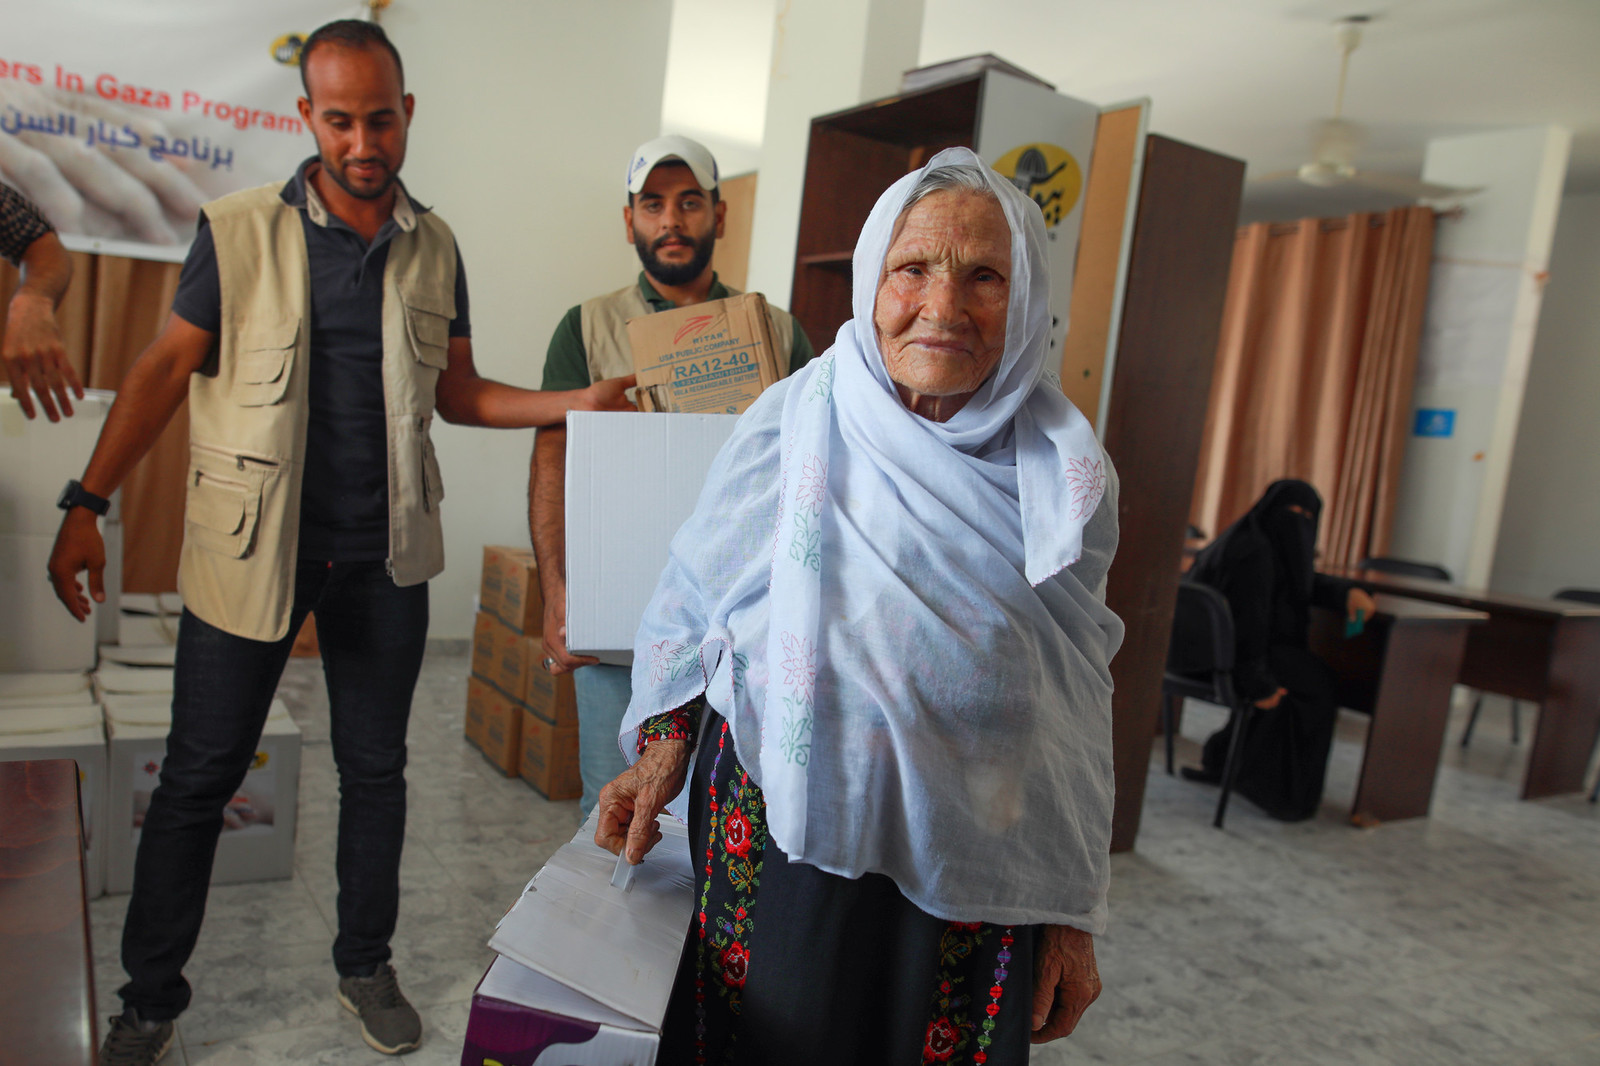 Gaza elder receiving aide